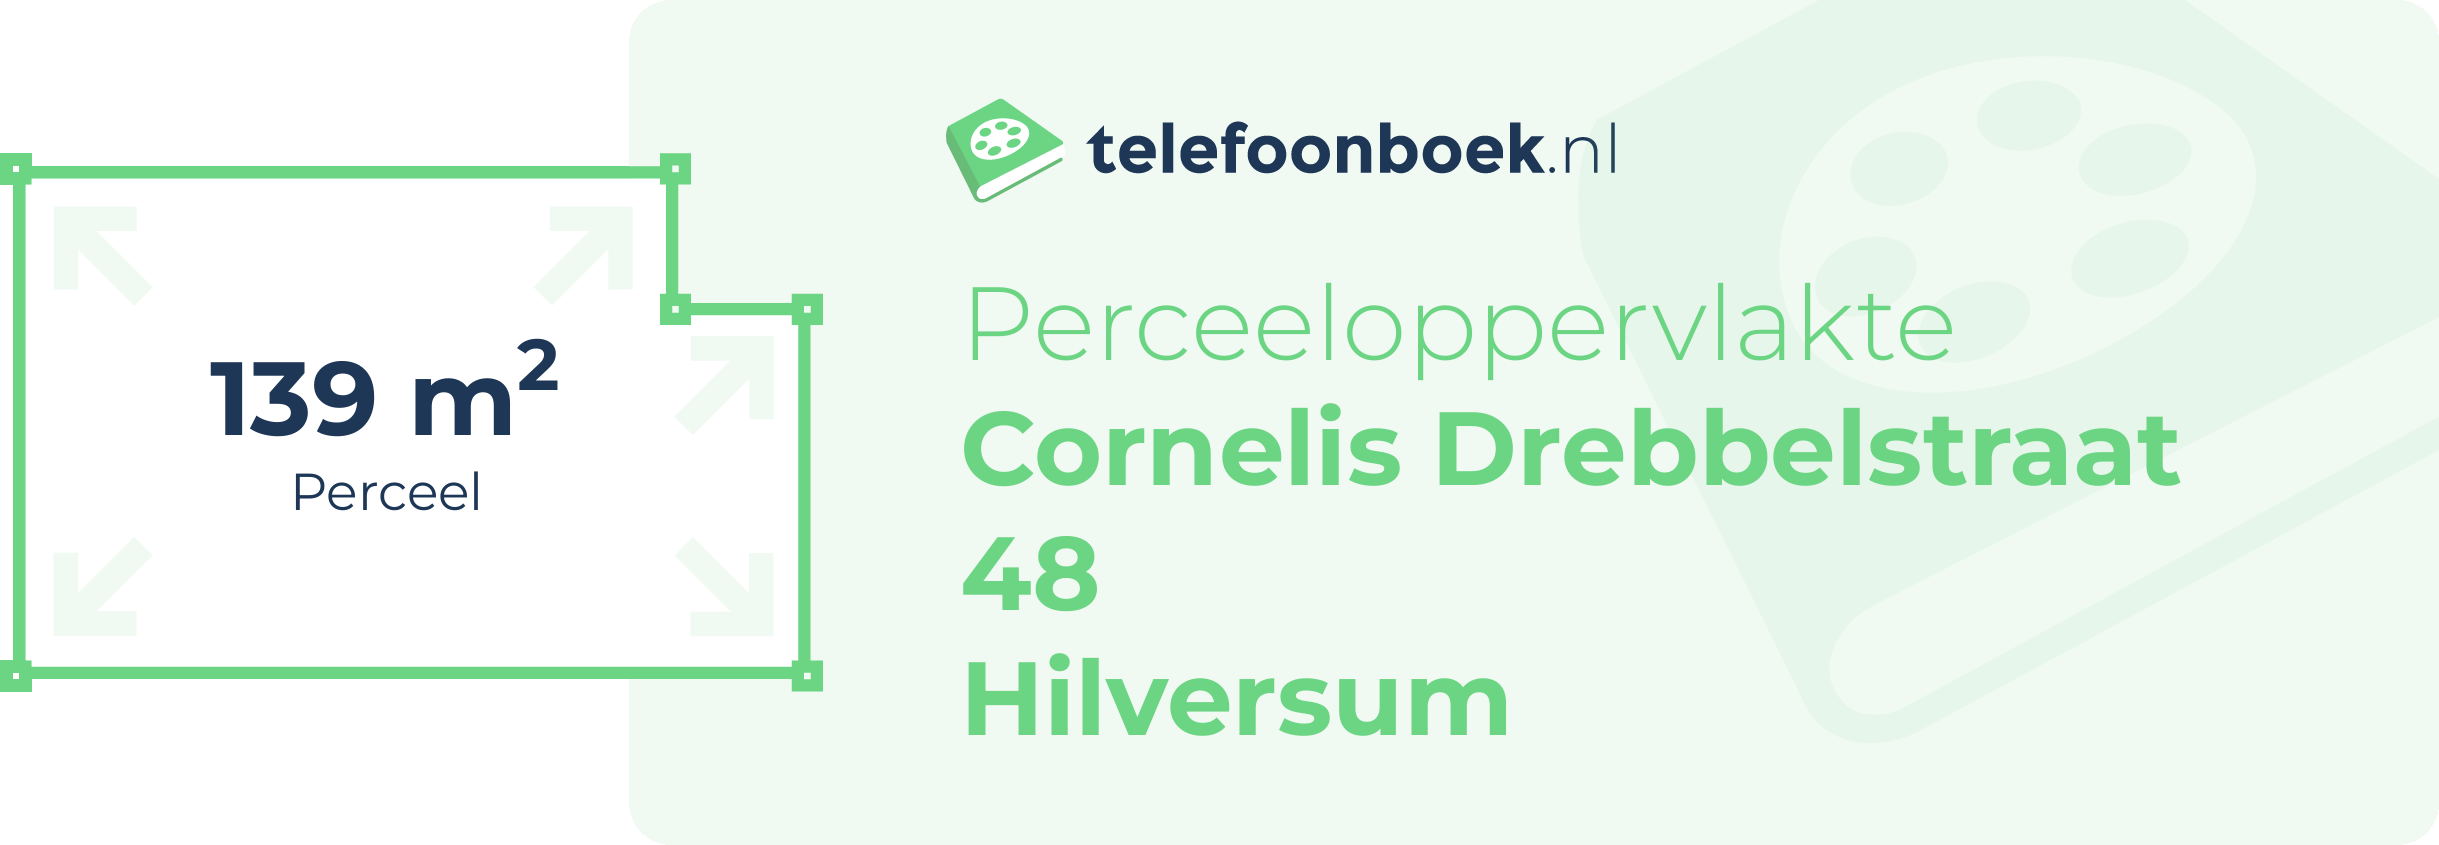 Perceeloppervlakte Cornelis Drebbelstraat 48 Hilversum